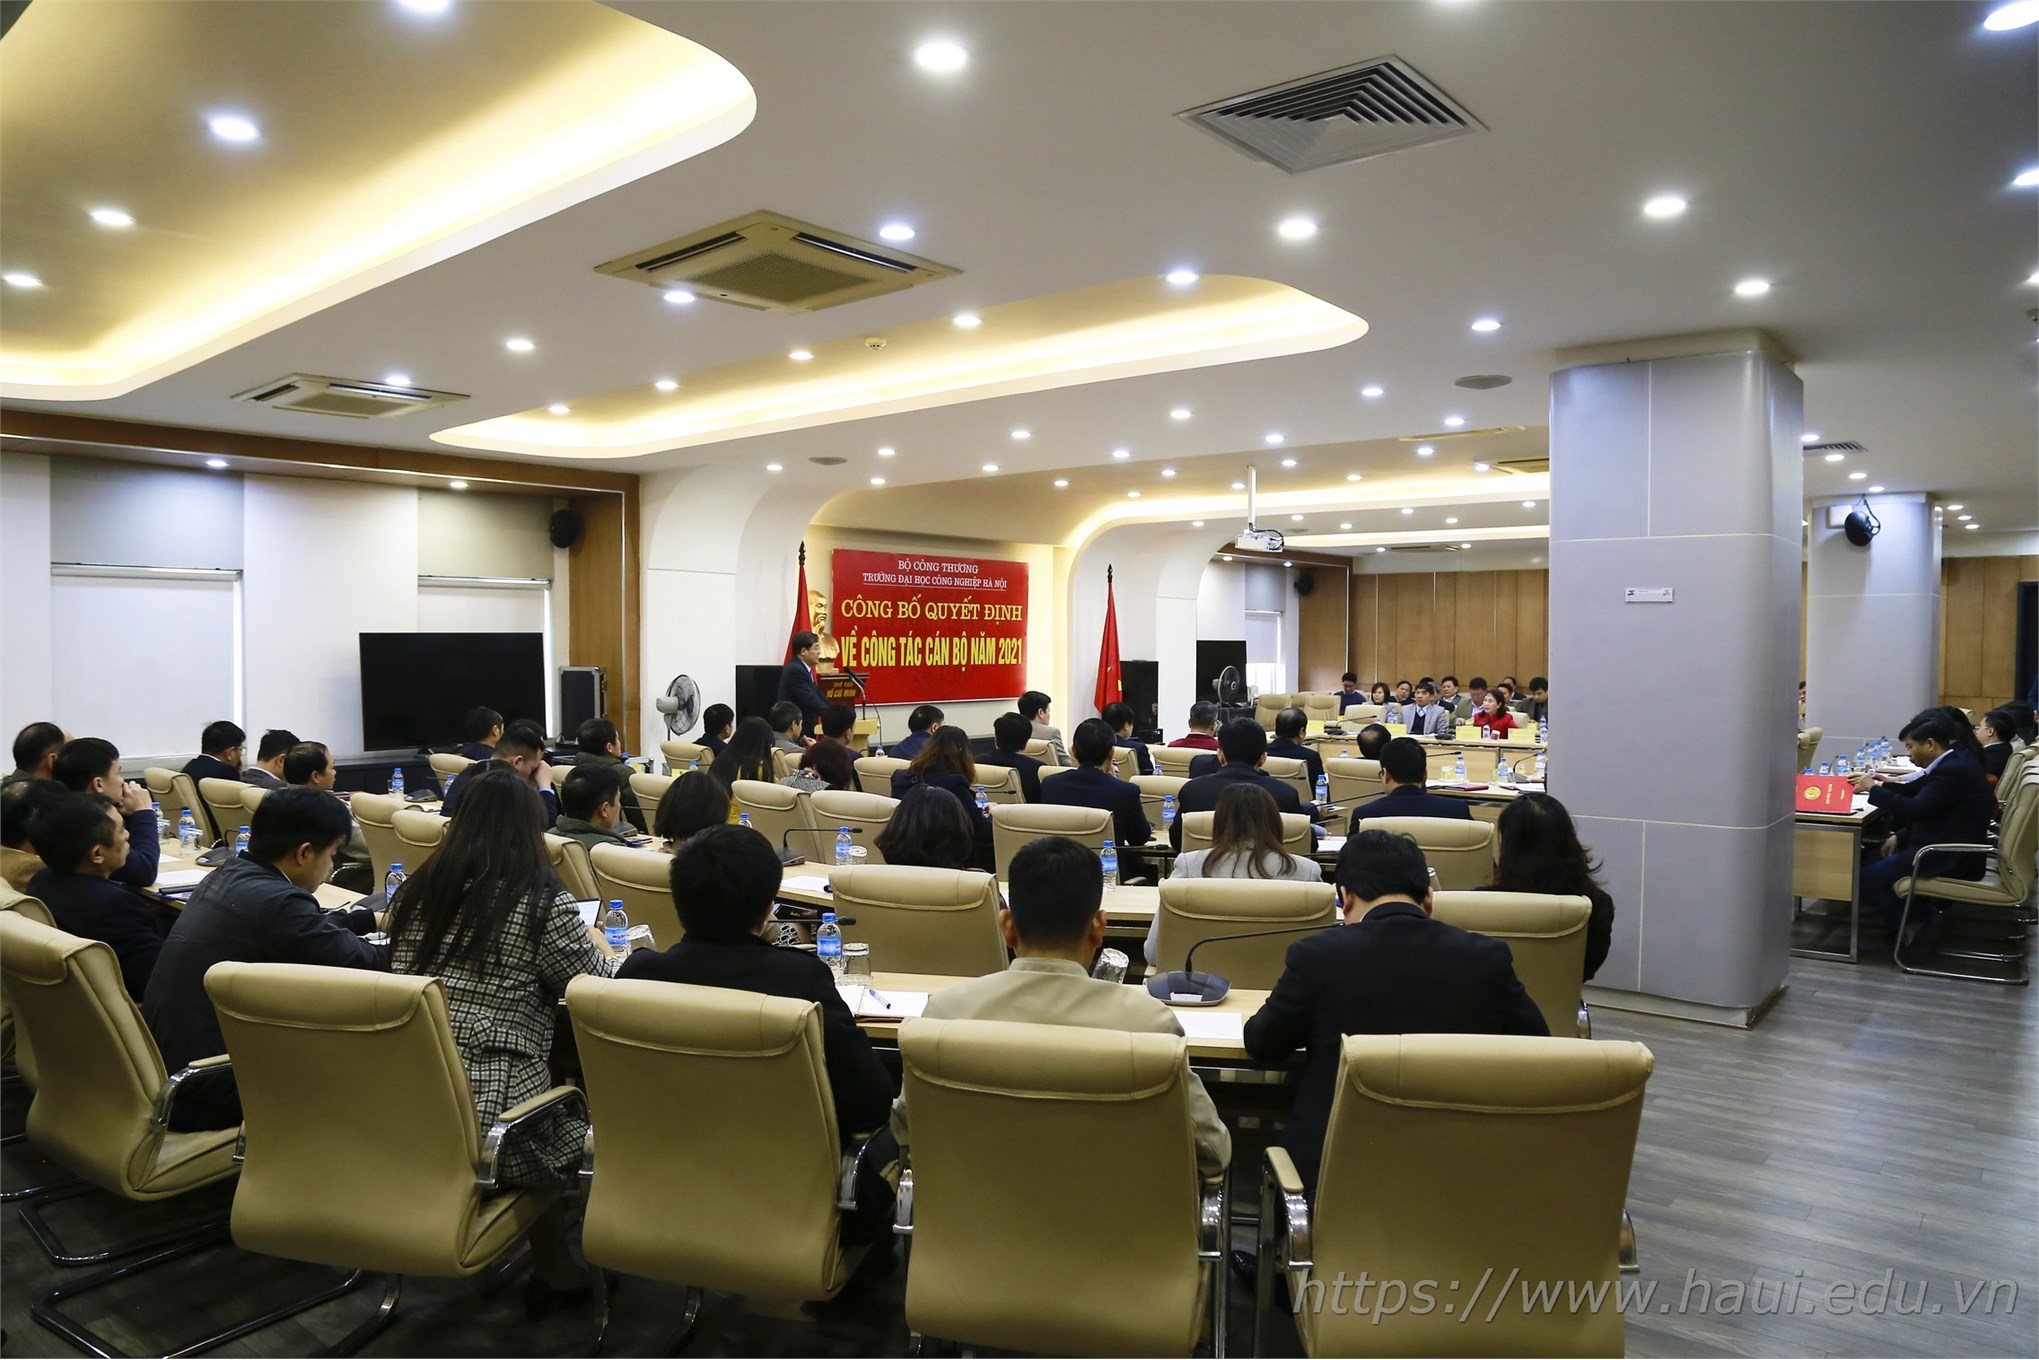 Đại học Công nghiệp Hà Nội công bố quyết định về công tác cán bộ